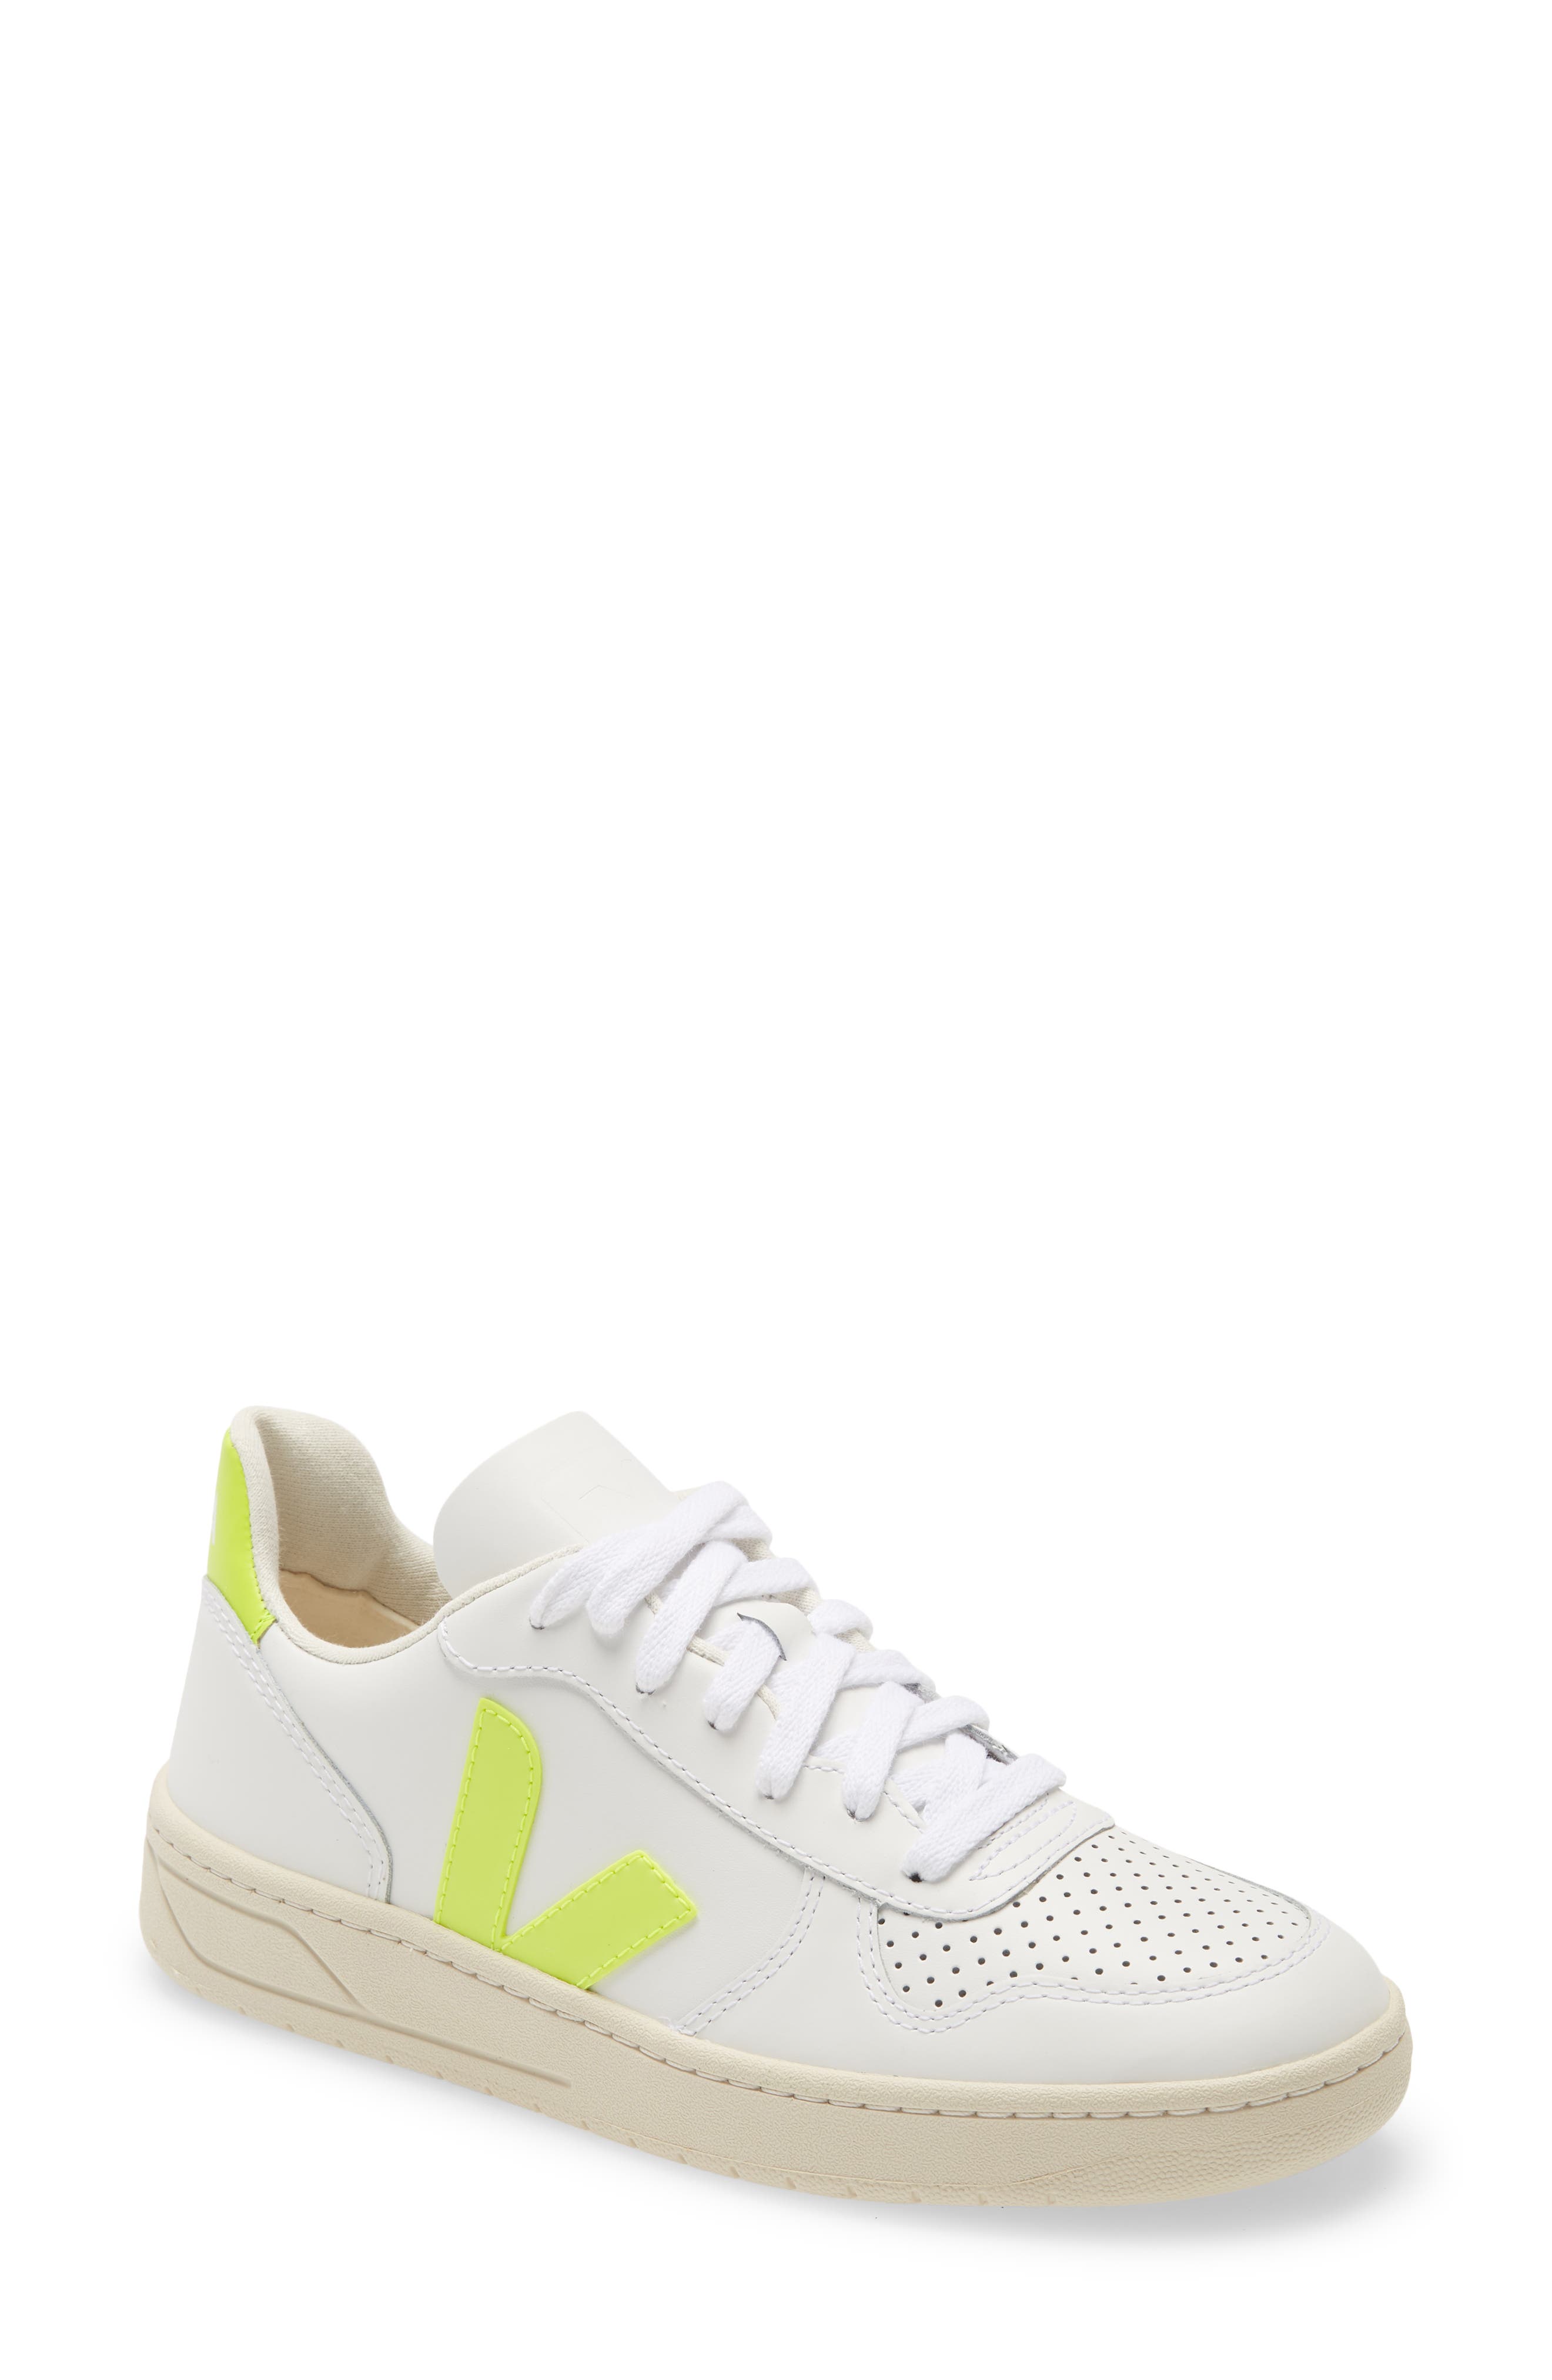 white v sneakers